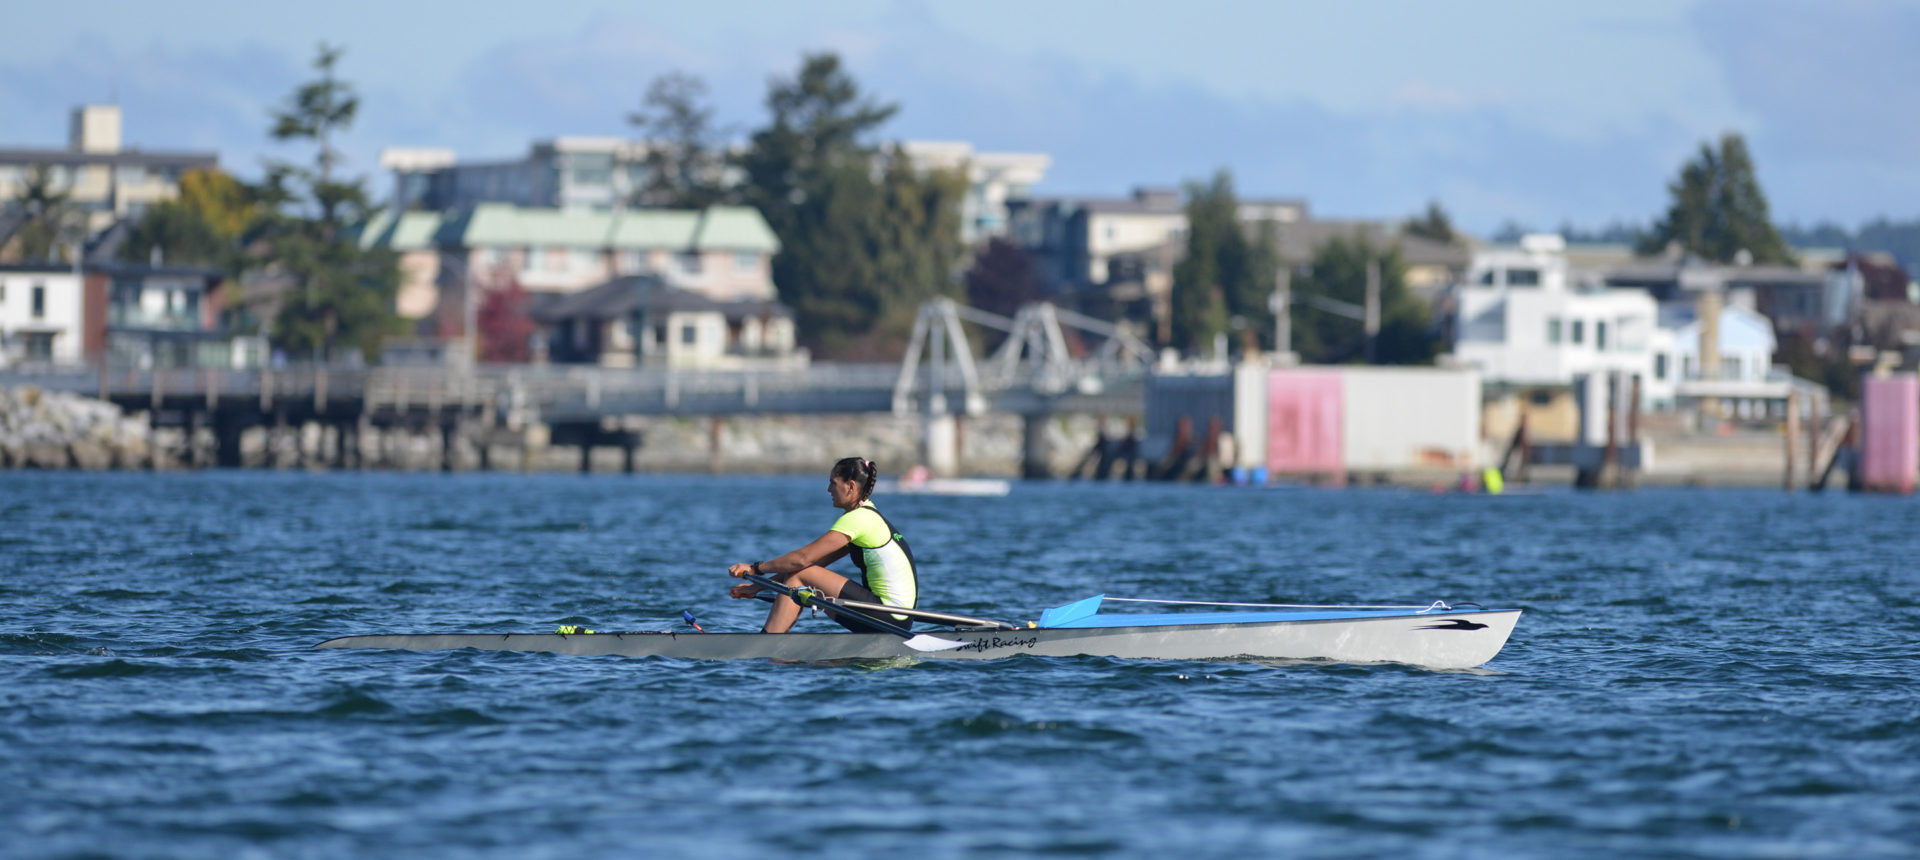 Le Canada en action aux premières finales de sprints sur plage de World Rowing